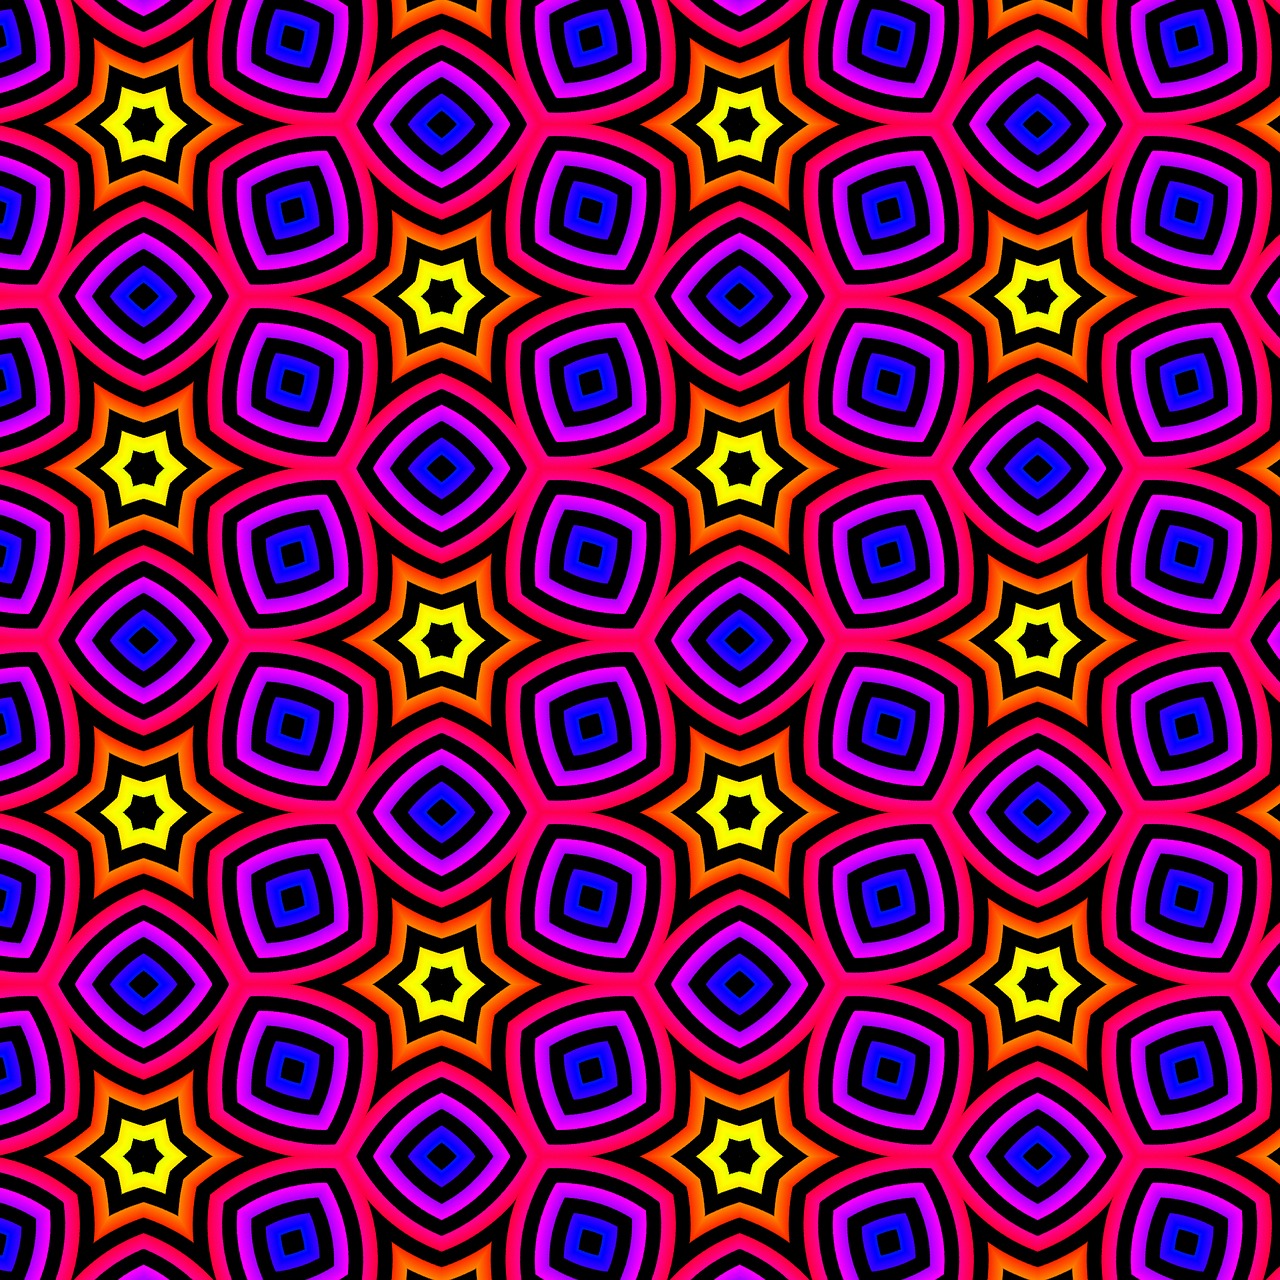 pattern rainbow pattern colorful free photo